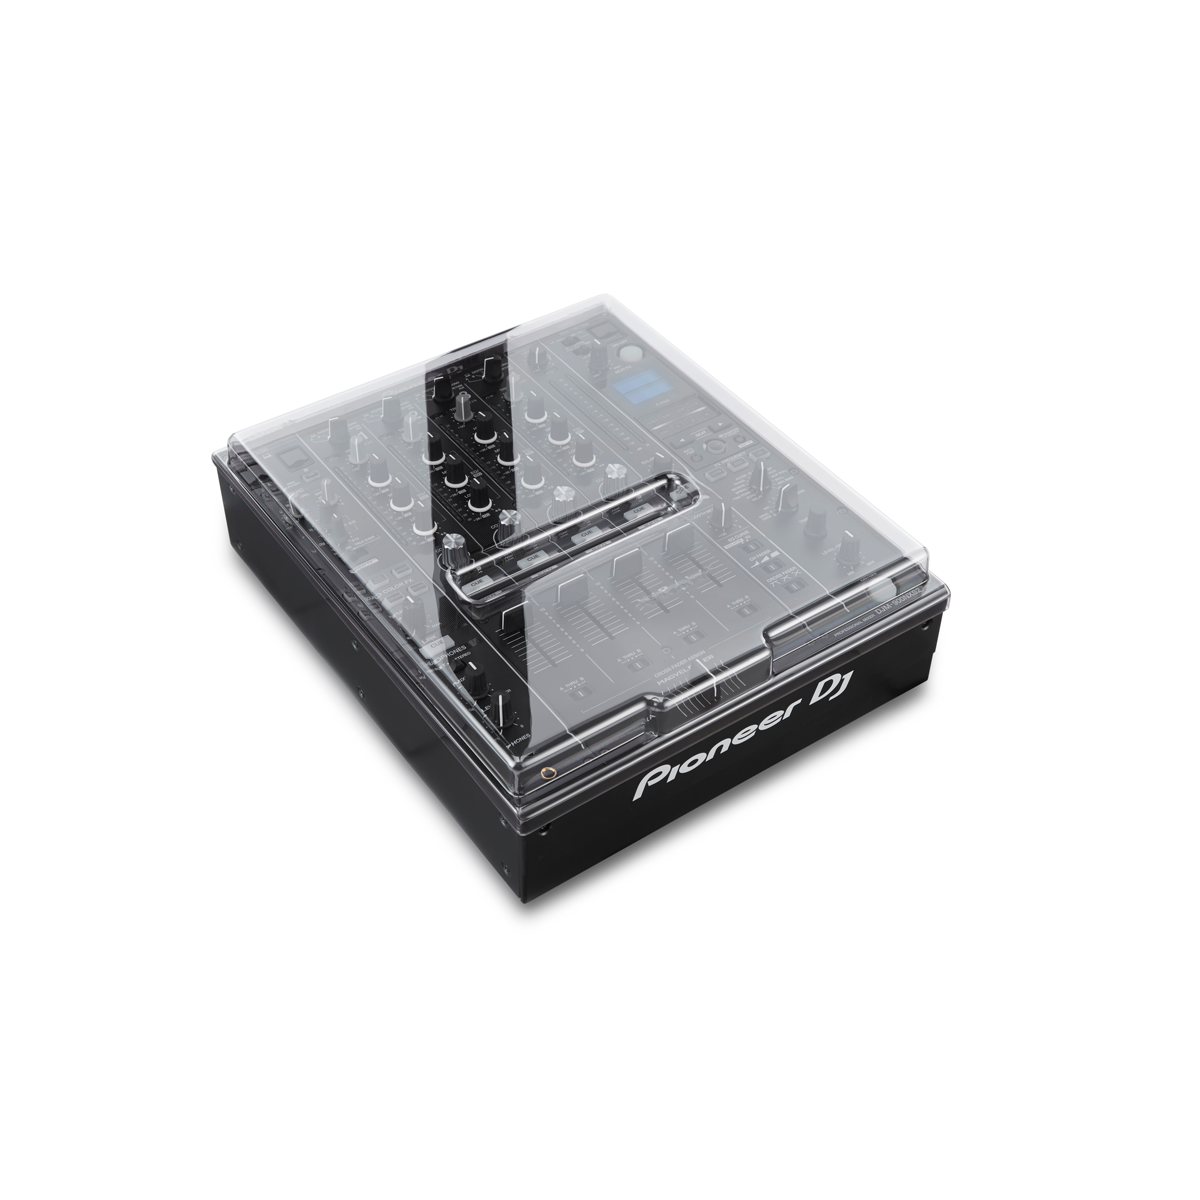 Decksavers - DeckSaver - DJM900 NXS2 TRANSPARENT